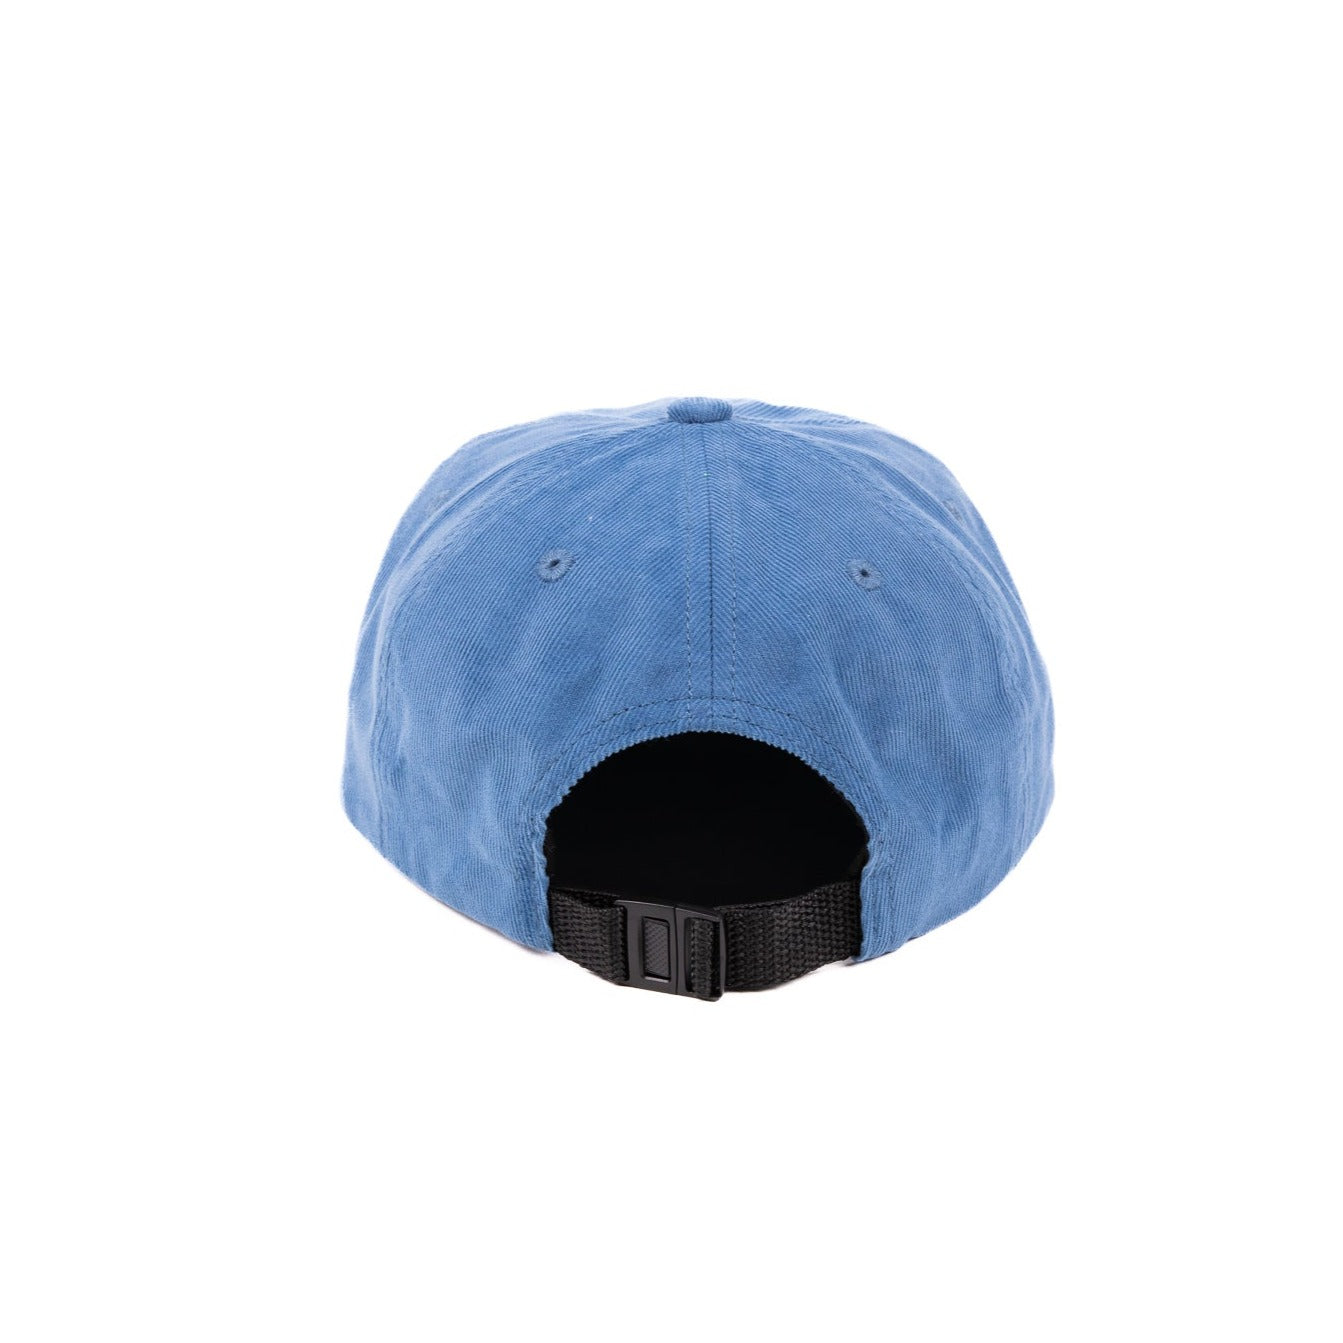 Back of blue corduroy hat, black adjustable strap. 